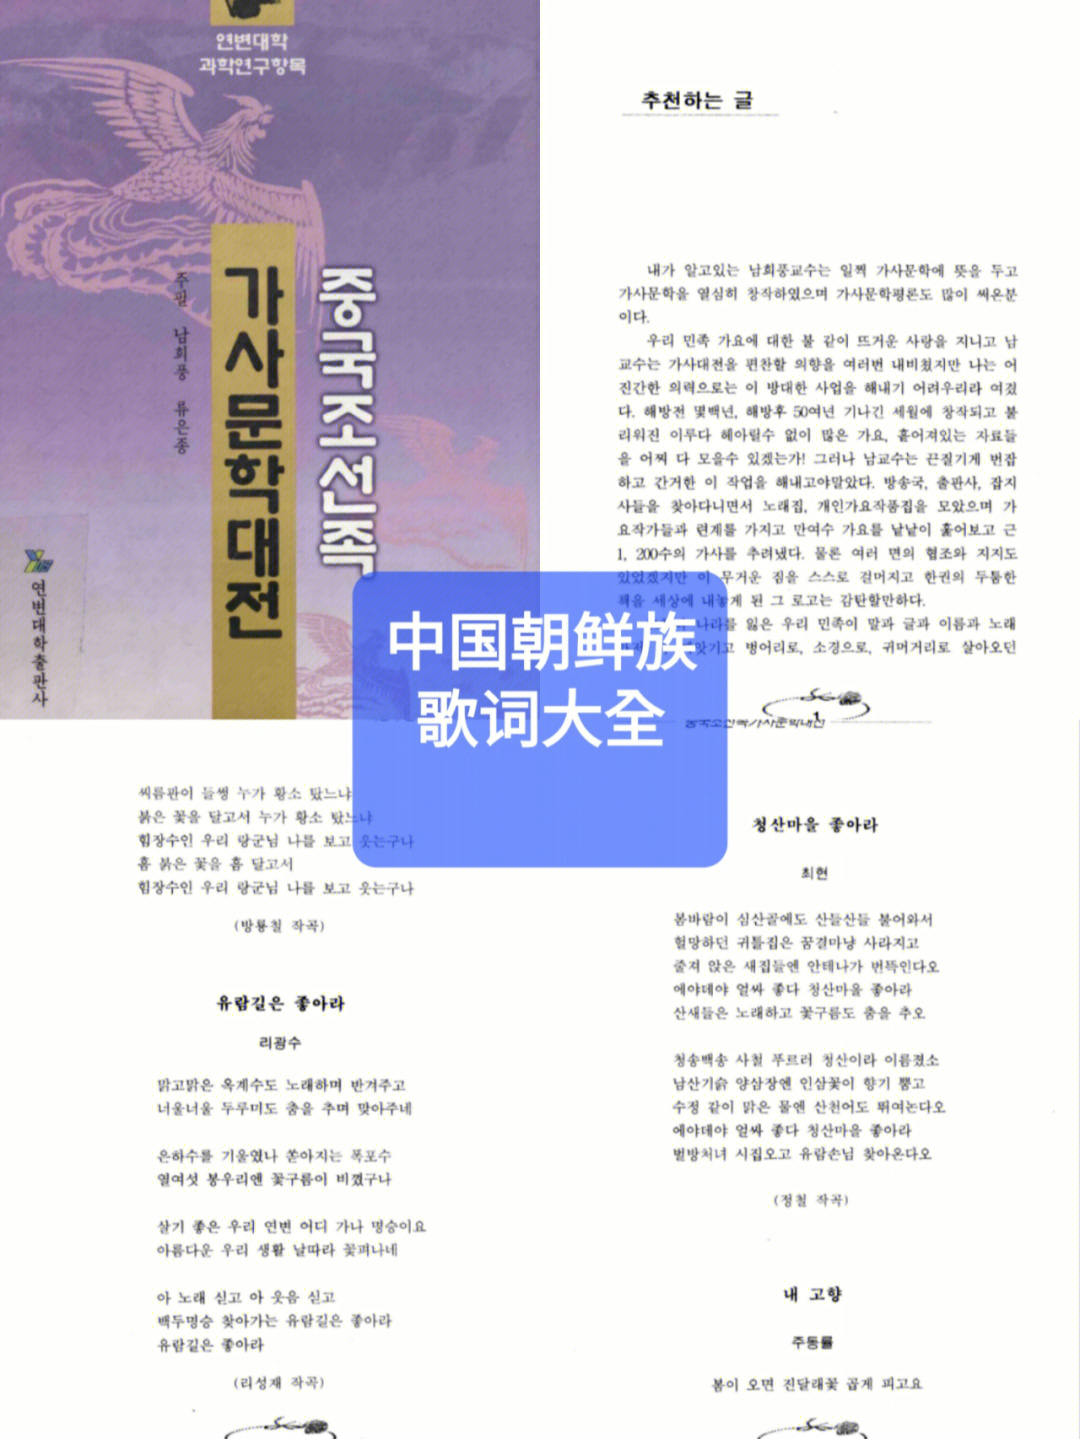 韩语阅读中国朝鲜族歌词大全